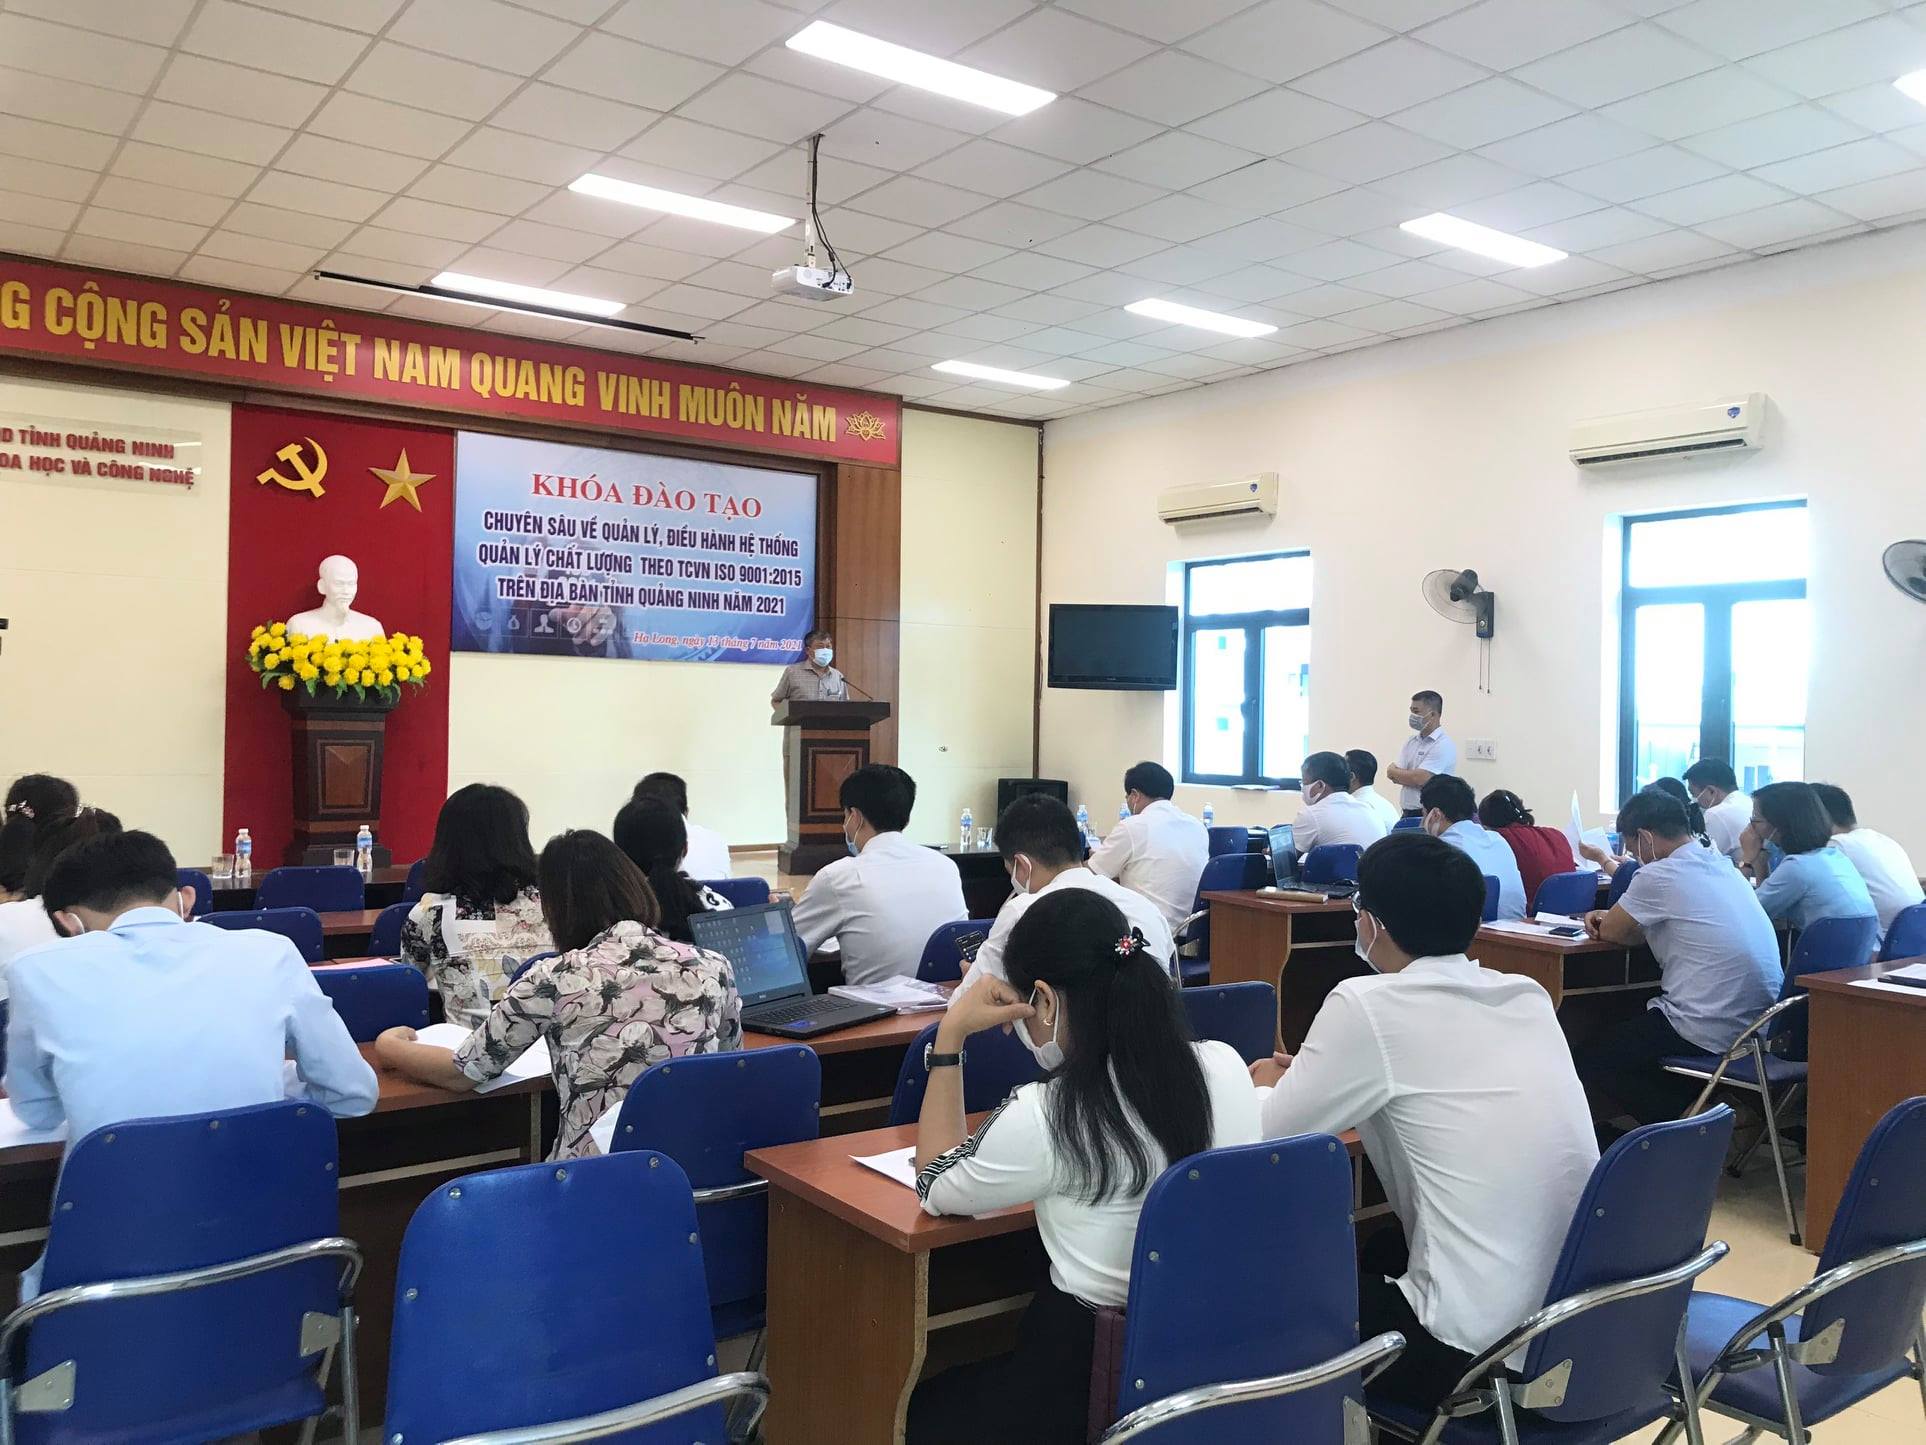 khóa đào tạo chuyên sâu về HTQLCL theo TCVN ISO 9001:2015 tại Quảng Ninh năm 2021